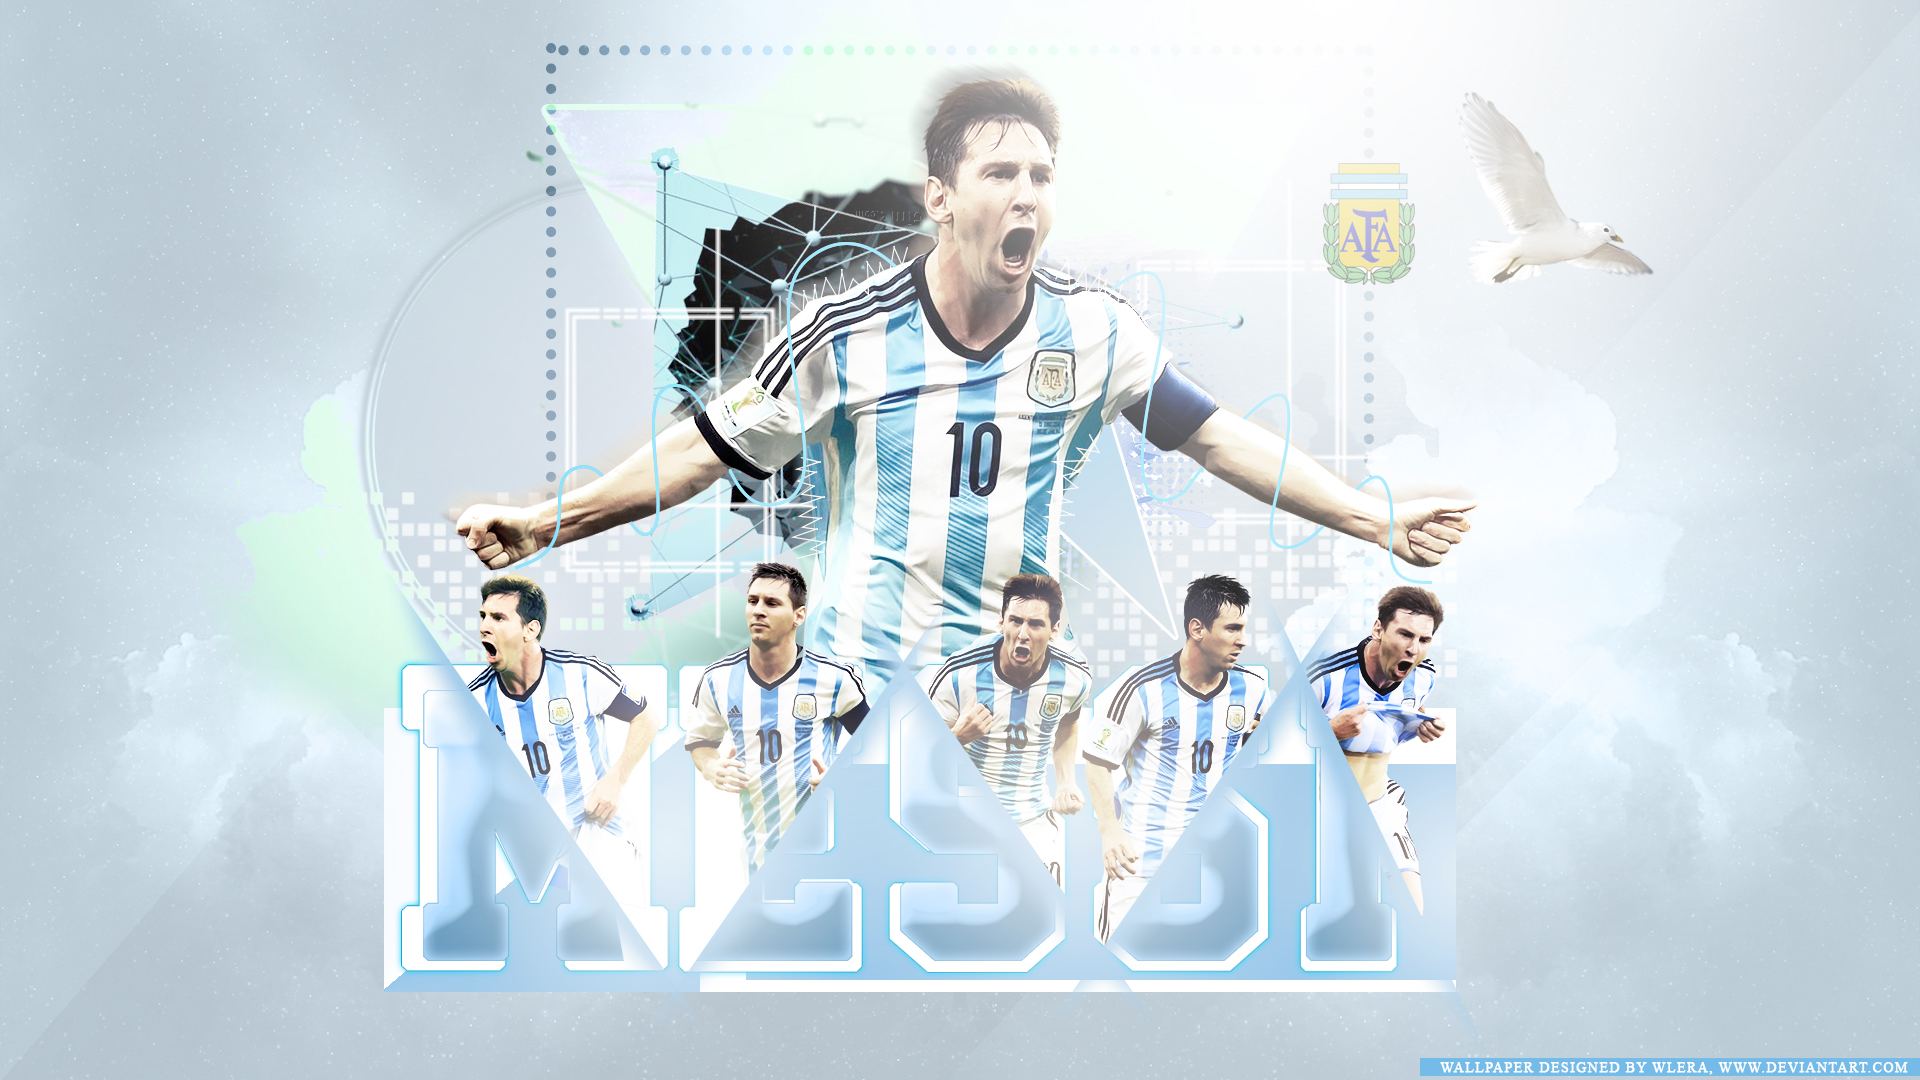 Ảnh nền Messi: Sự kết hợp của tài năng và sự nổi tiếng khiến cho Lionel Messi trở thành một biểu tượng của thế giới bóng đá. Hãy nghía qua những hình ảnh nền về Messi để cảm nhận niềm đam mê của riêng mình.